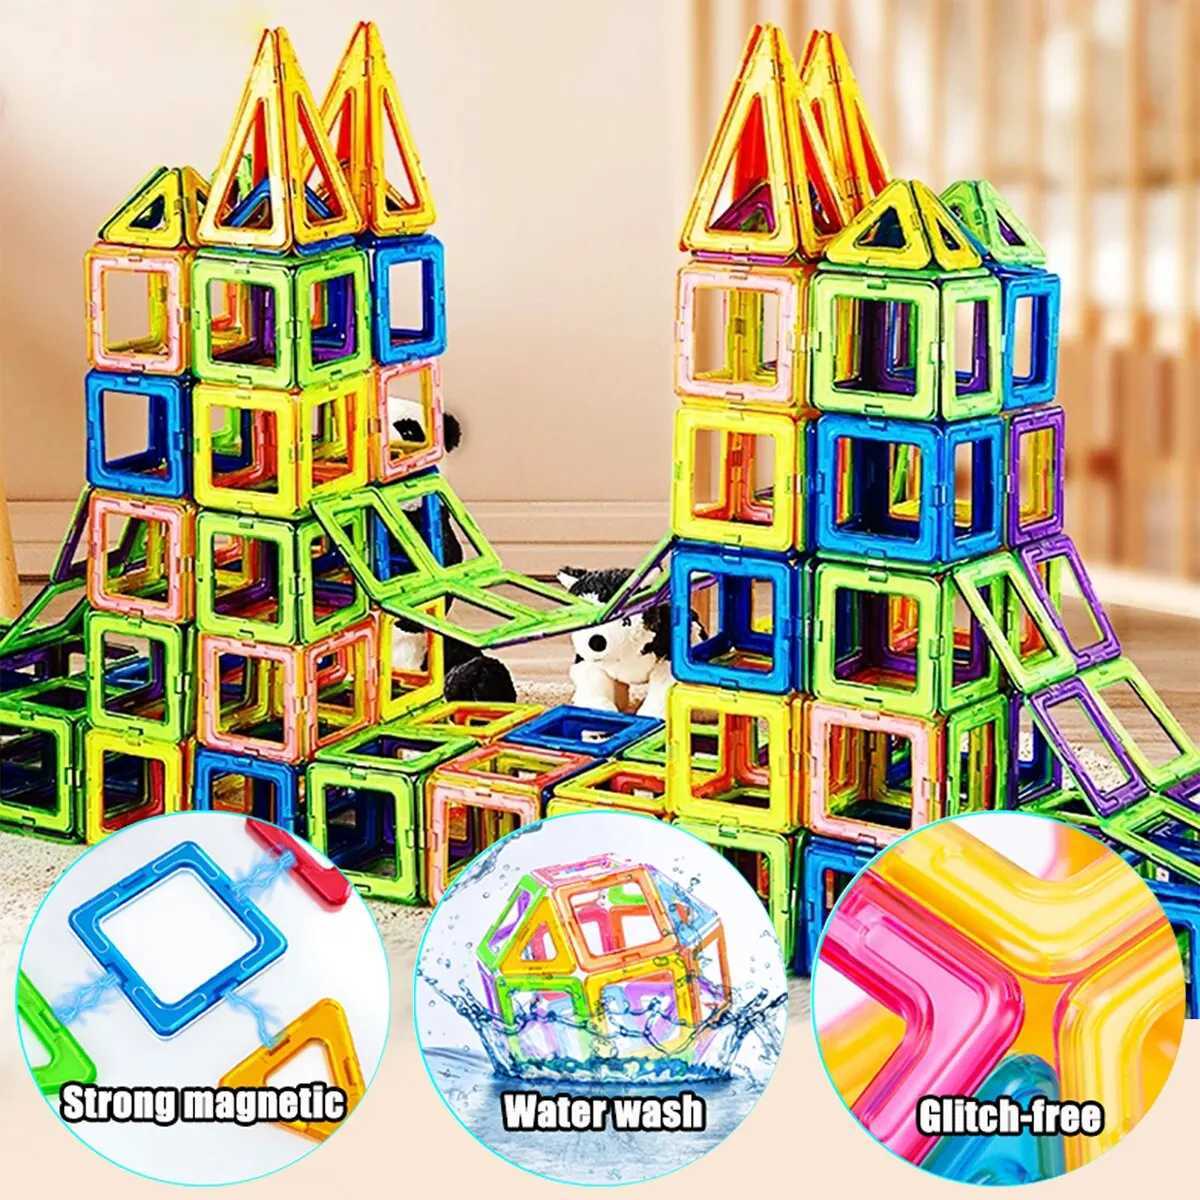 Aimants Magnétique Jouets Magnétique Blocs de construction Big Size and Mini Taille Aimants DIY Toys for Kids Designer Construction Set Gifts for Children Toys 2449